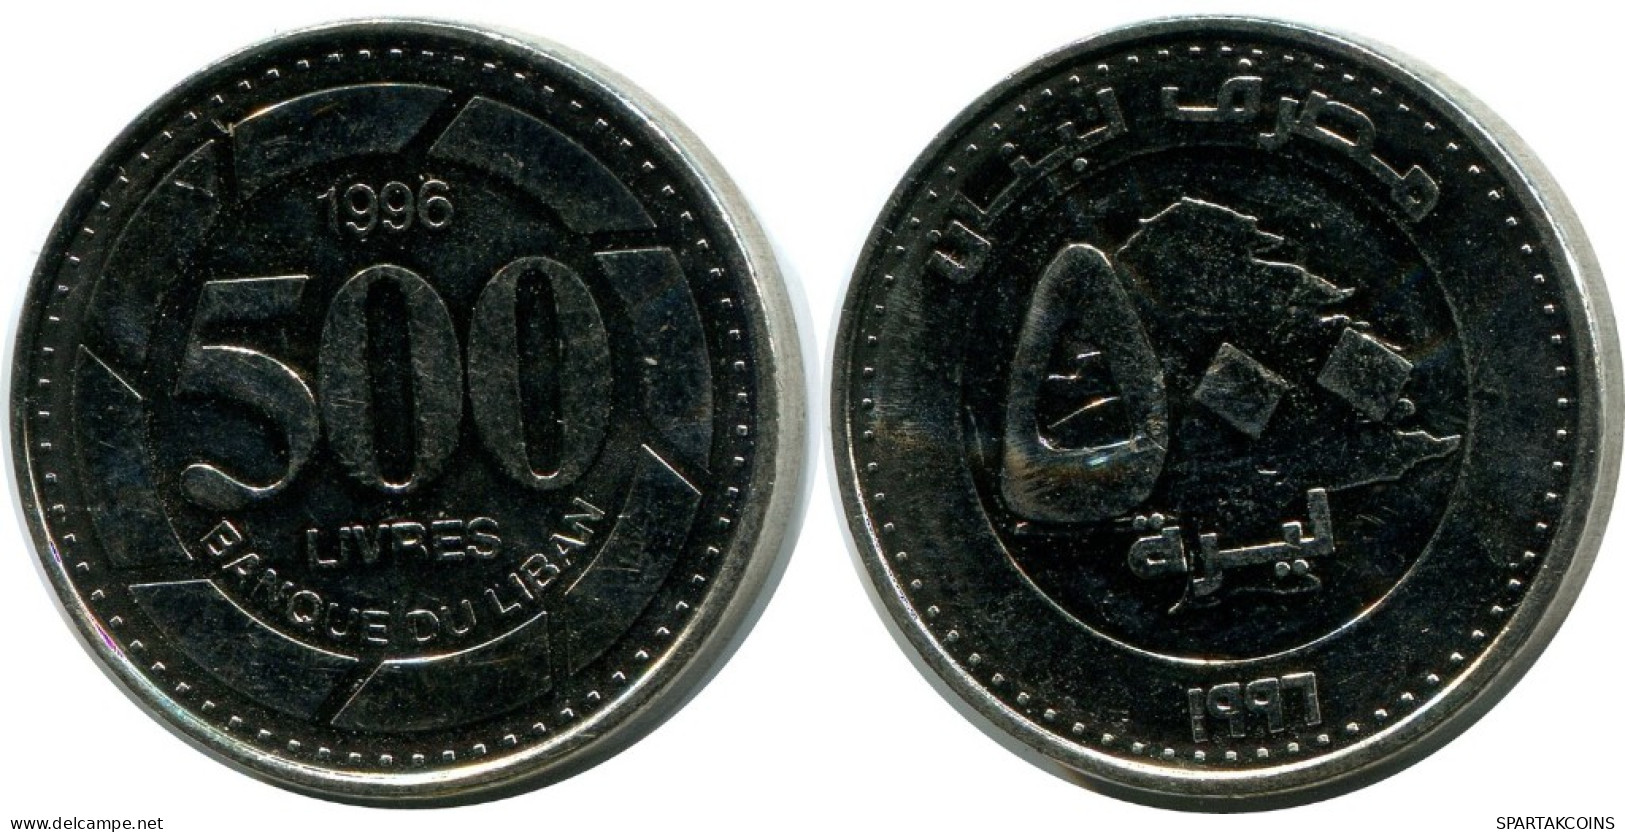 500 LIVRES 1996 LEBANON Coin #AH746.U.A - Libanon